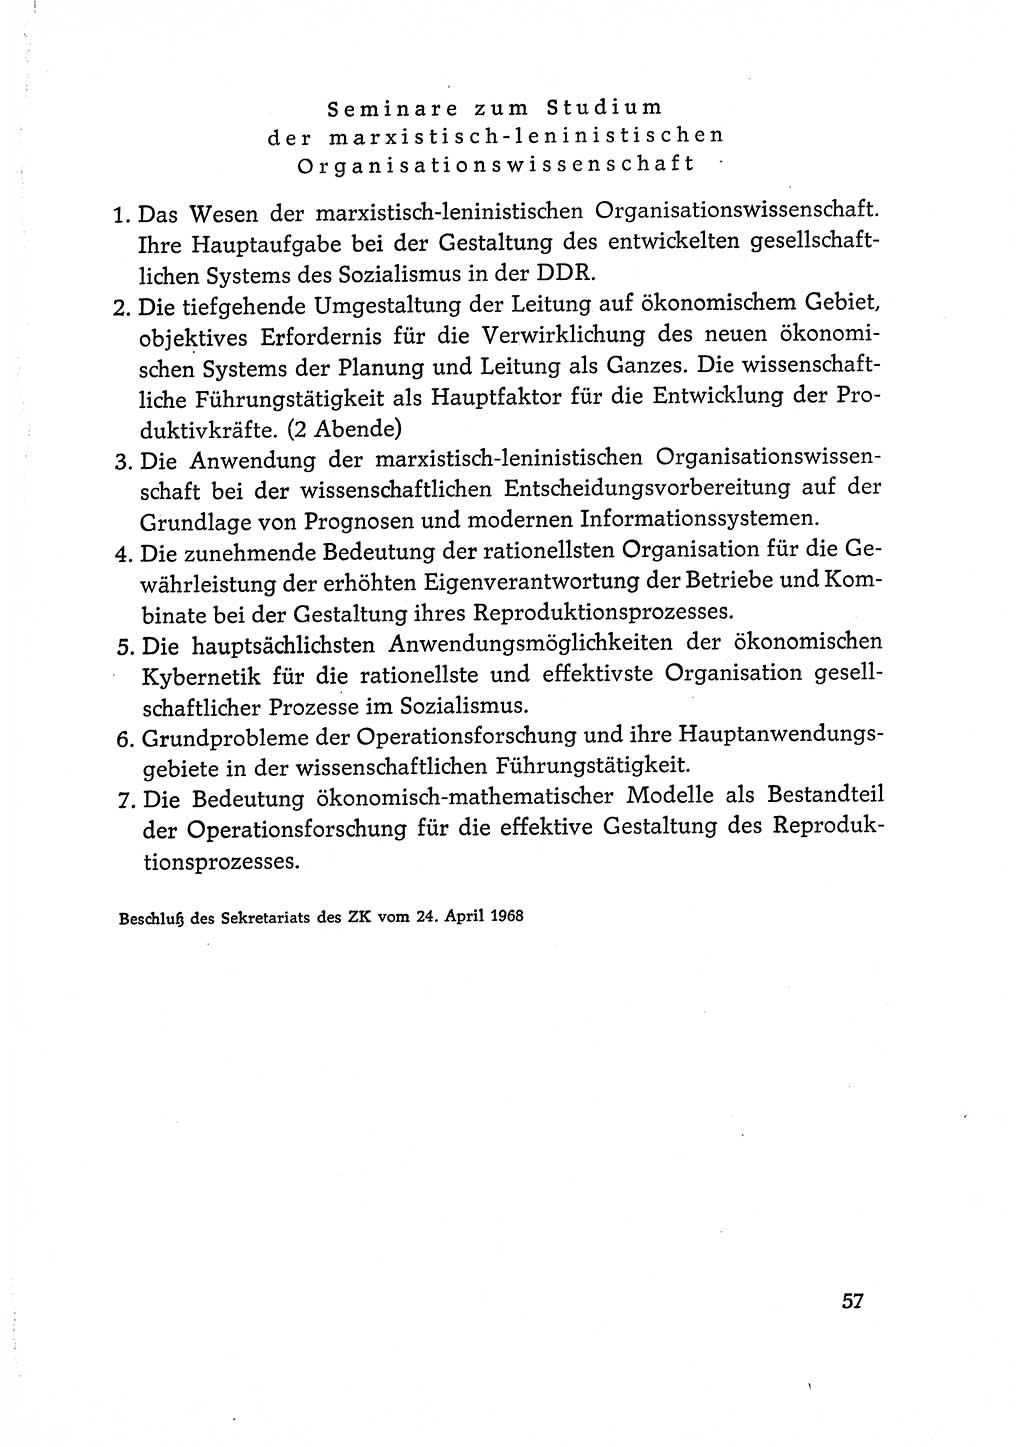 Dokumente der Sozialistischen Einheitspartei Deutschlands (SED) [Deutsche Demokratische Republik (DDR)] 1968-1969, Seite 57 (Dok. SED DDR 1968-1969, S. 57)